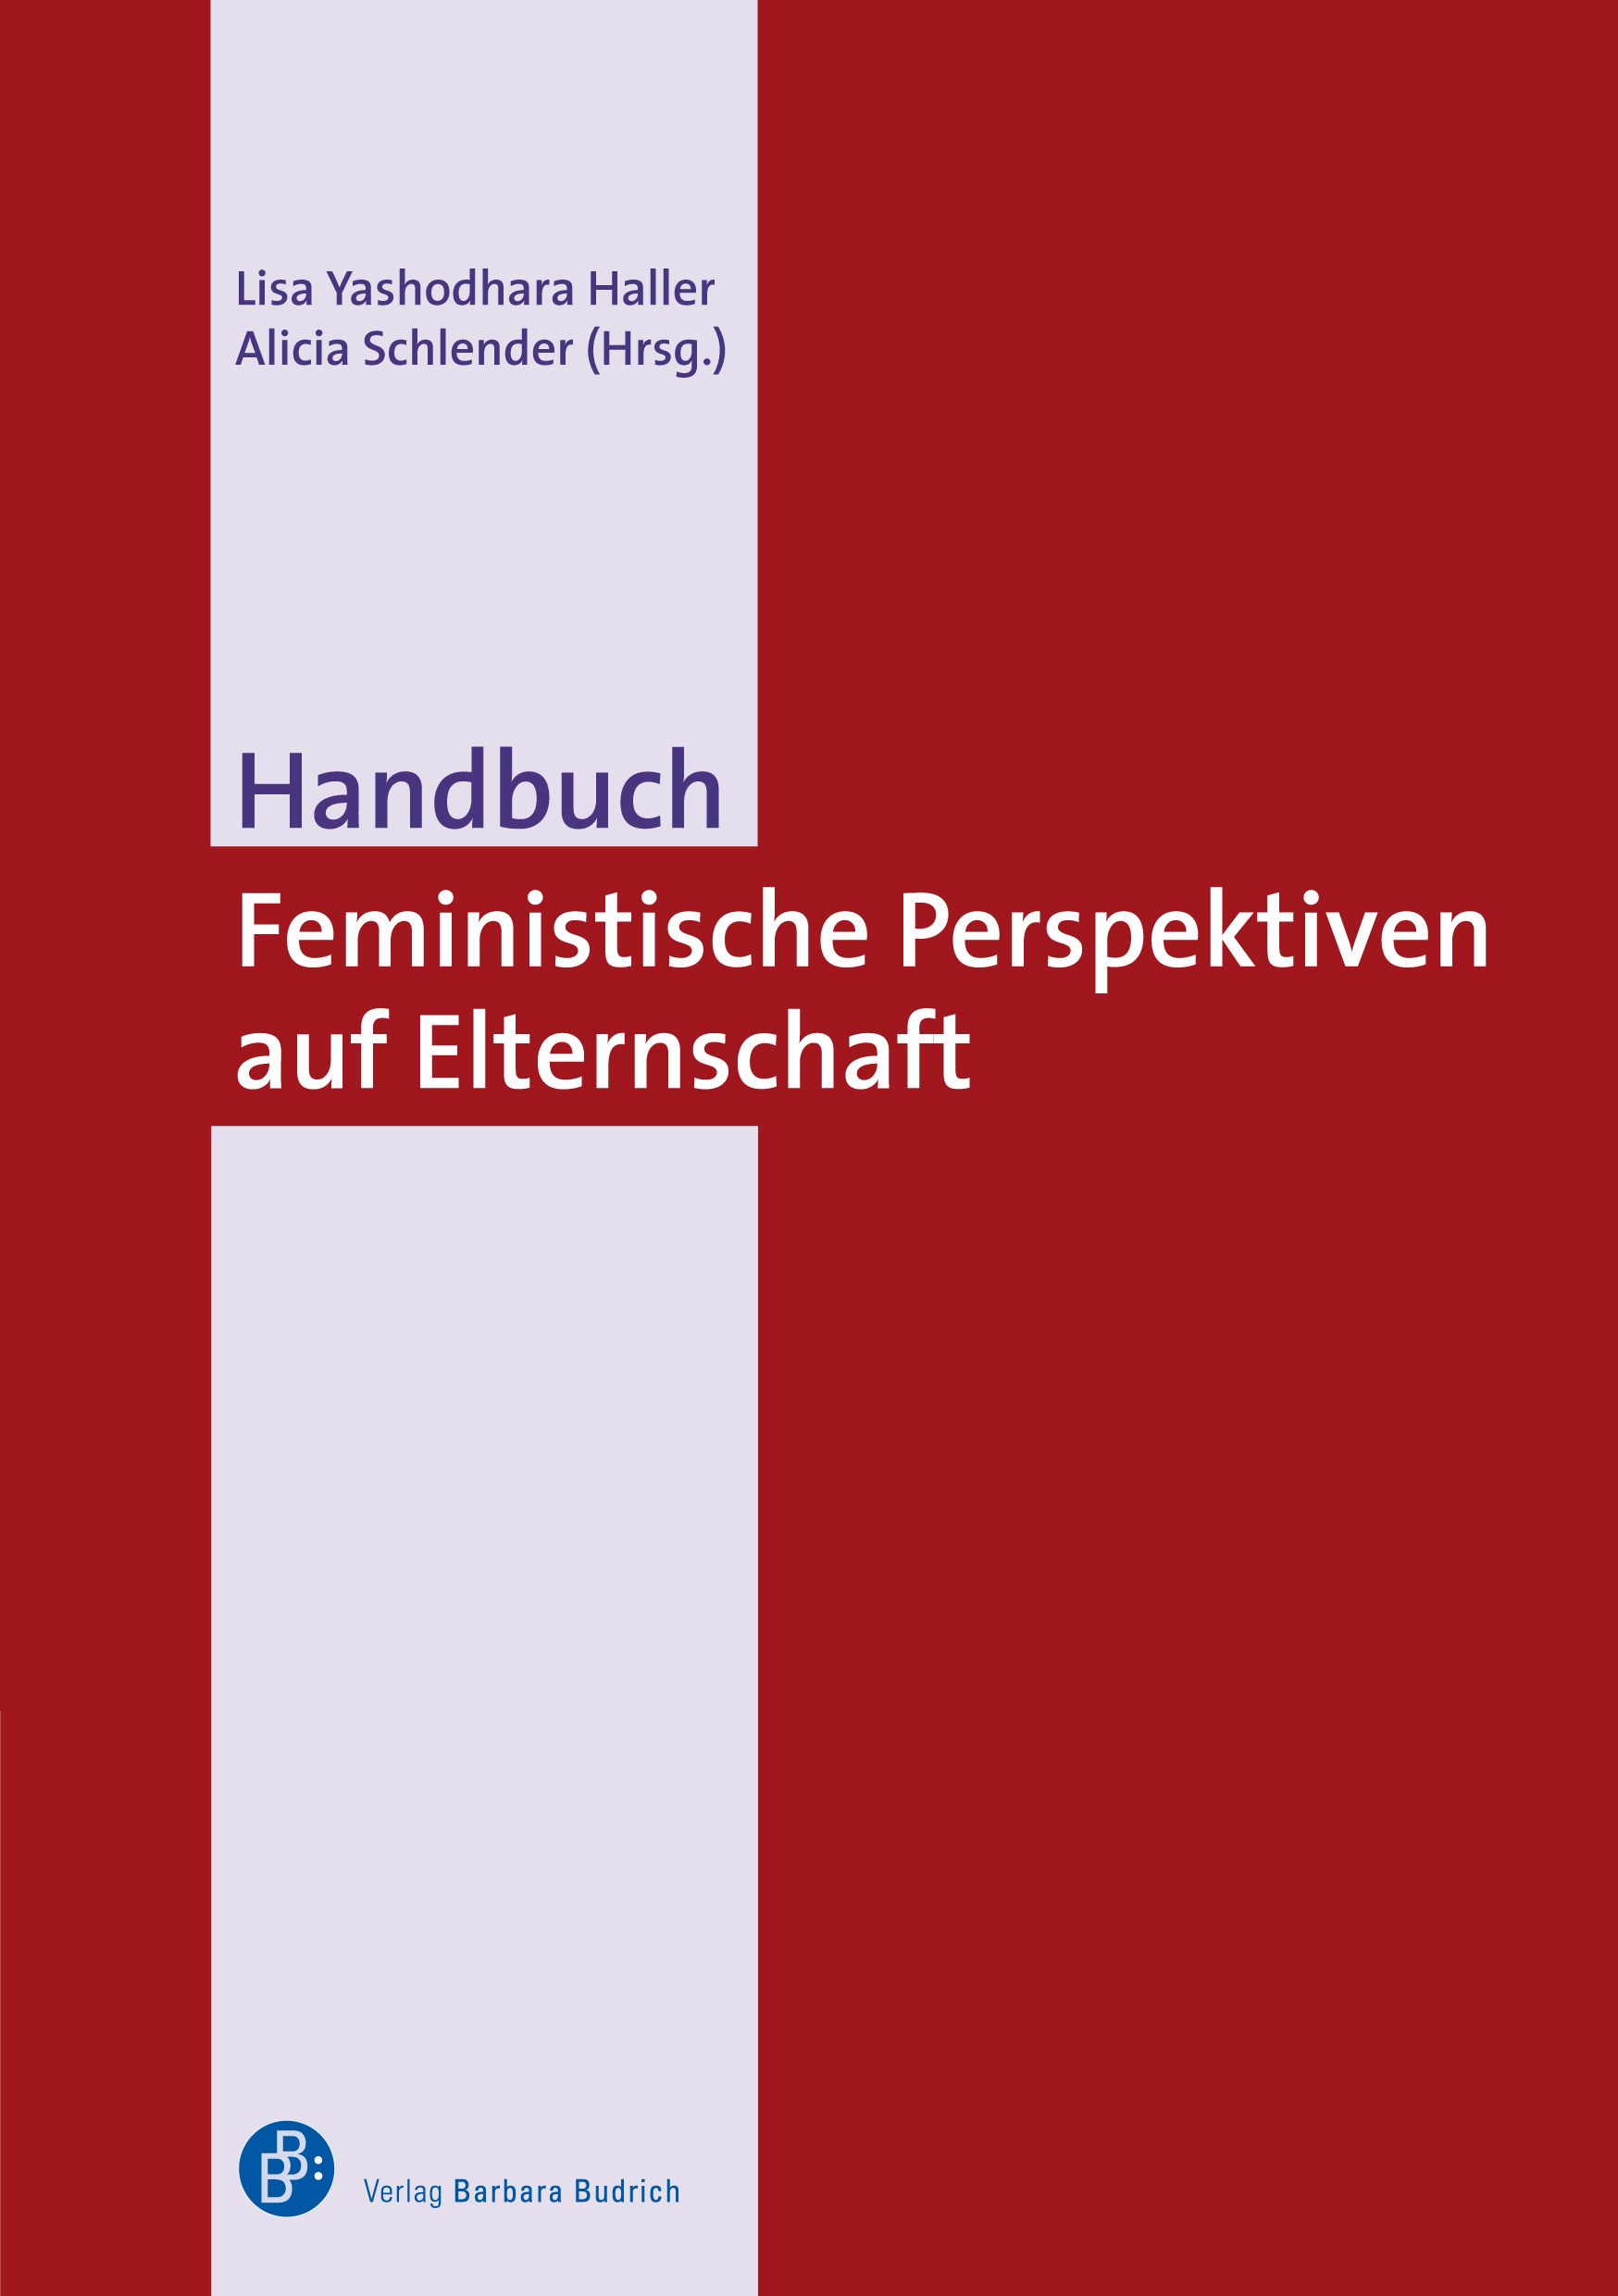 Handbuch Feministische Perspektiven auf Elternschaft.jpeg